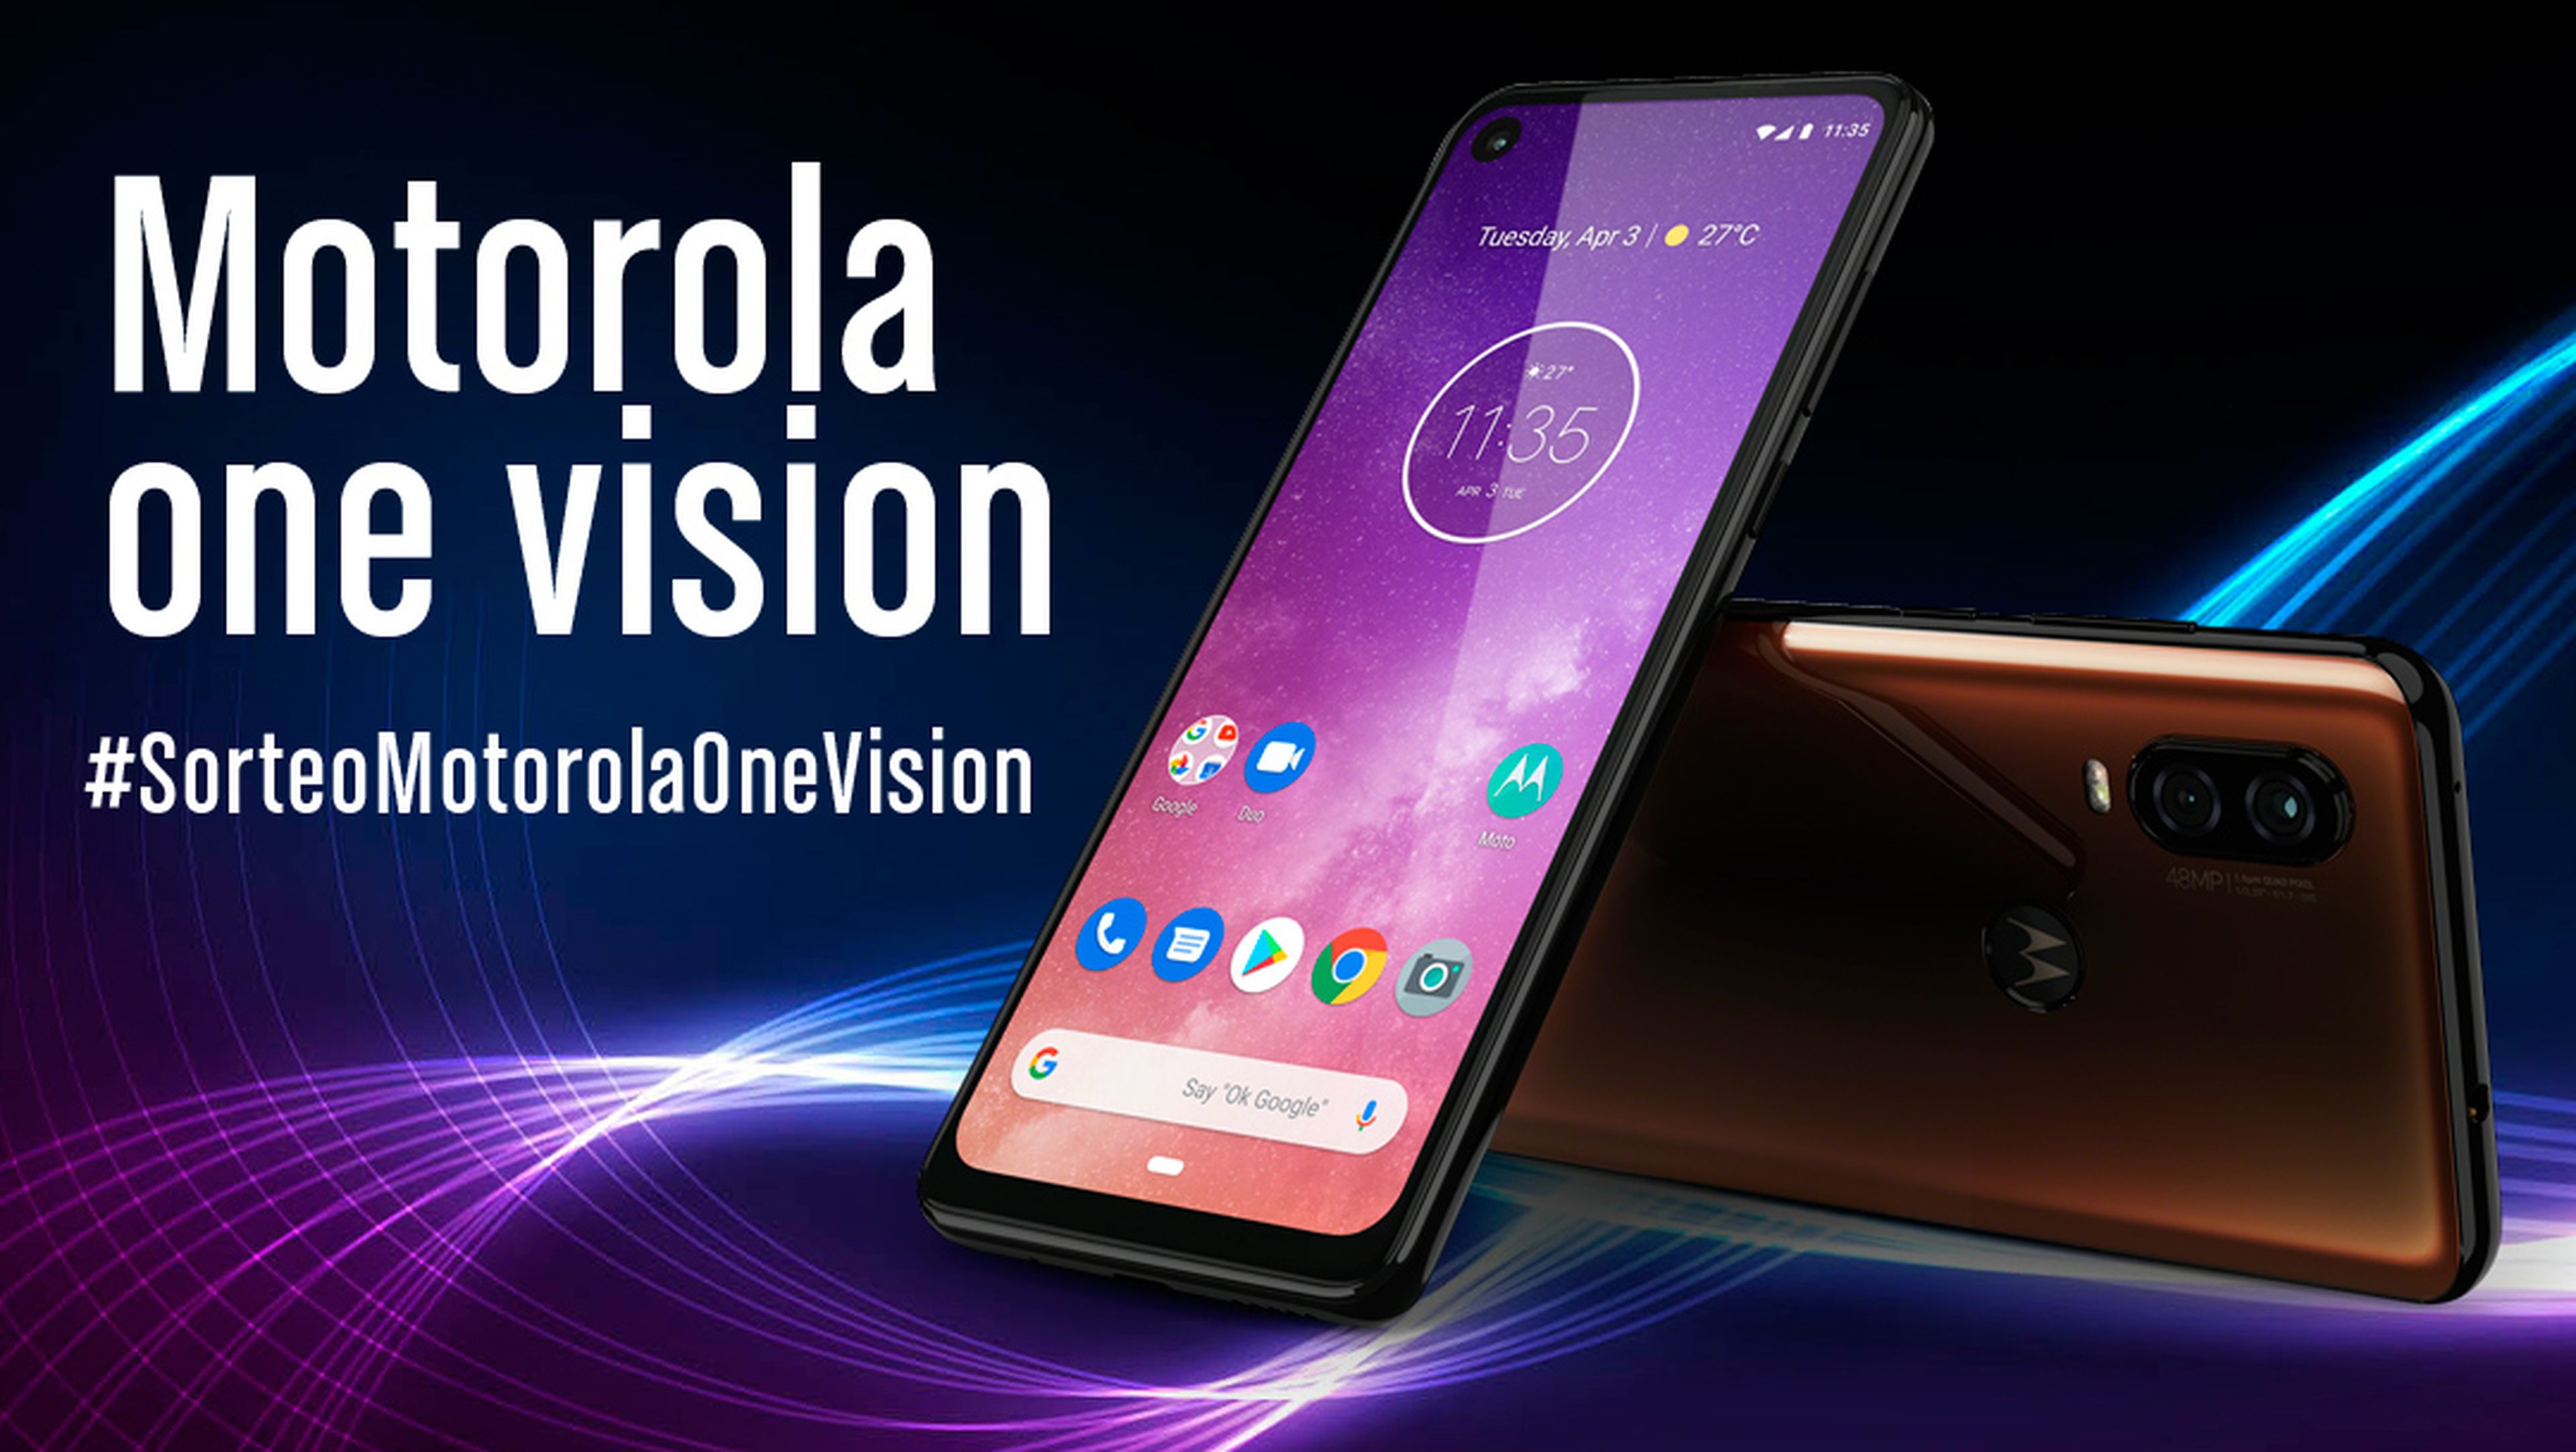 Superaste el primer reto para ganar un Motorola One Vision gratis? Esta es  la 2ª prueba